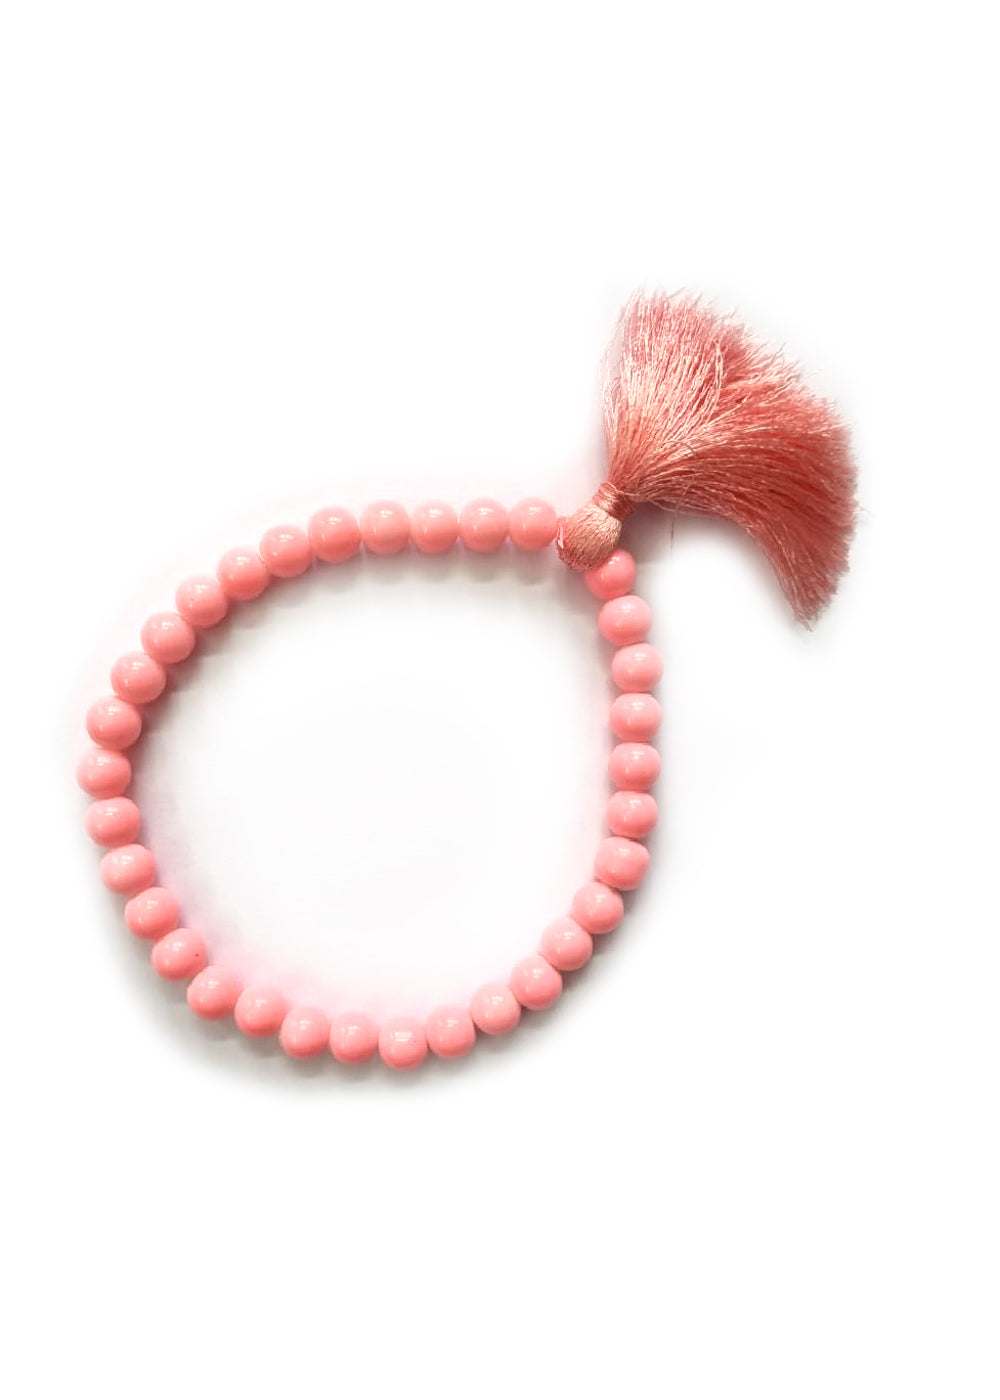 Prayer Beads - Pastel Pink